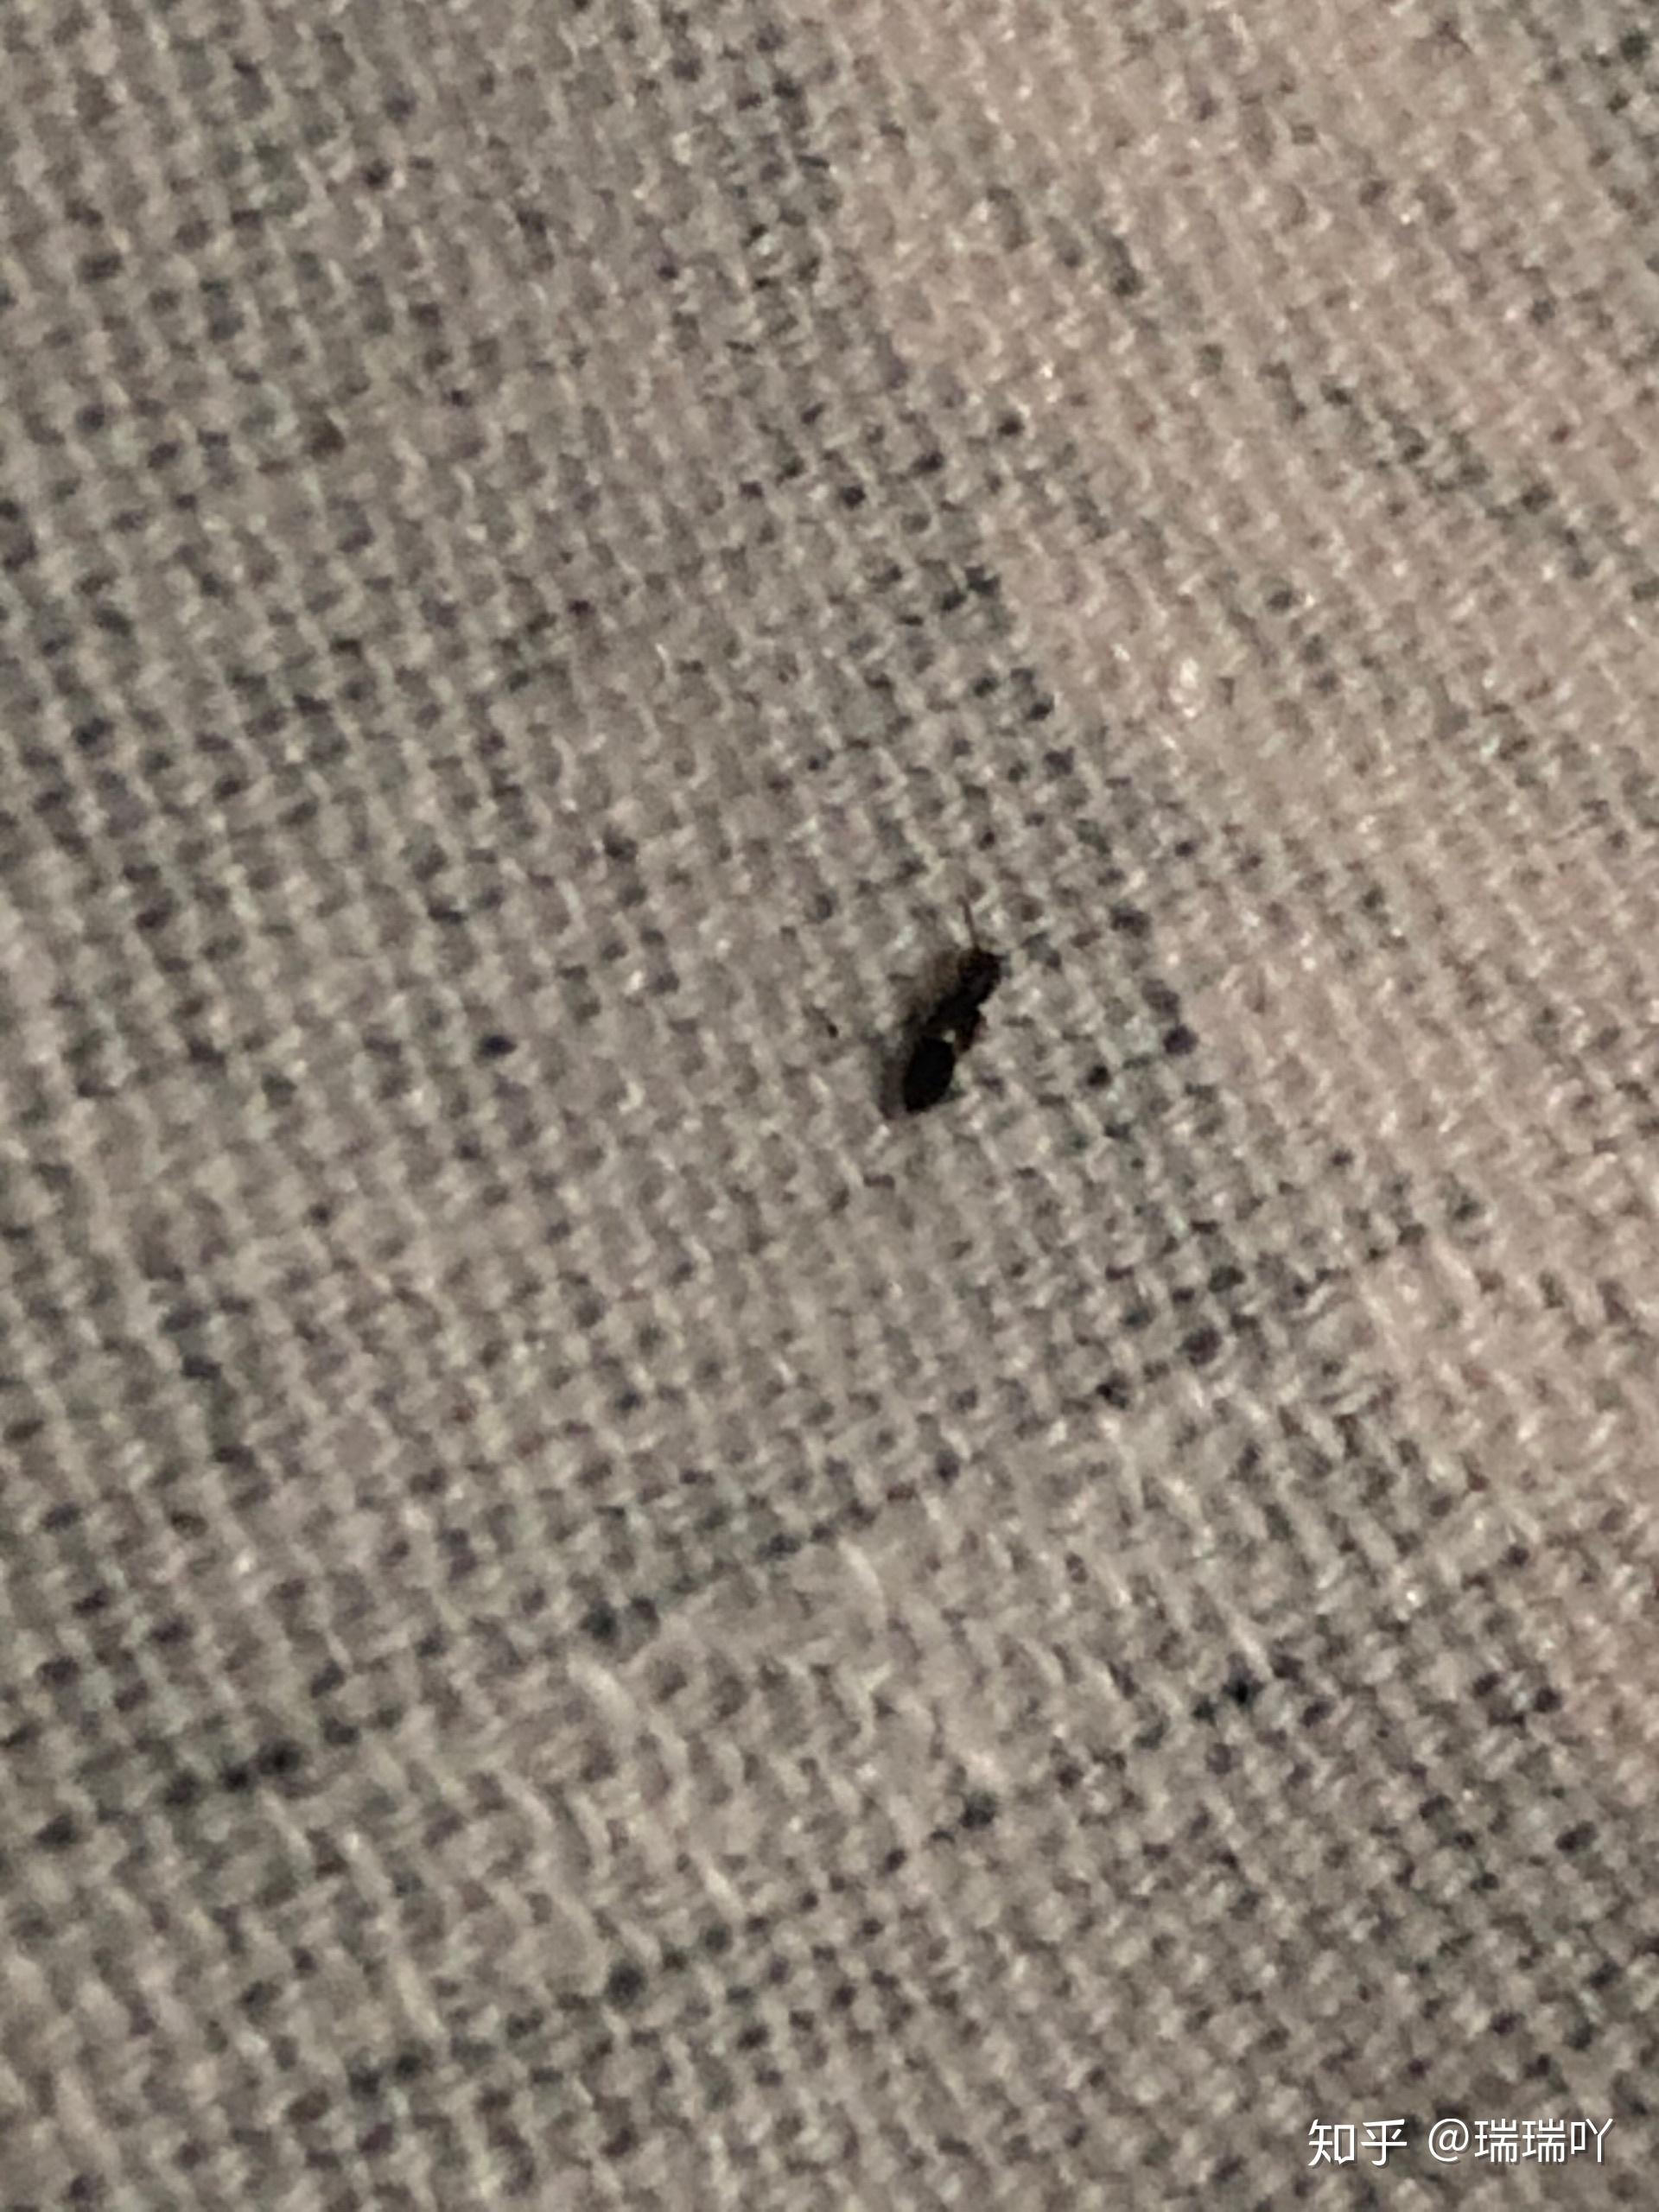 晚上睡前在床上发现十几只这种黑色虫,有点像蚂蚁,会飞,纯黑色的,很难